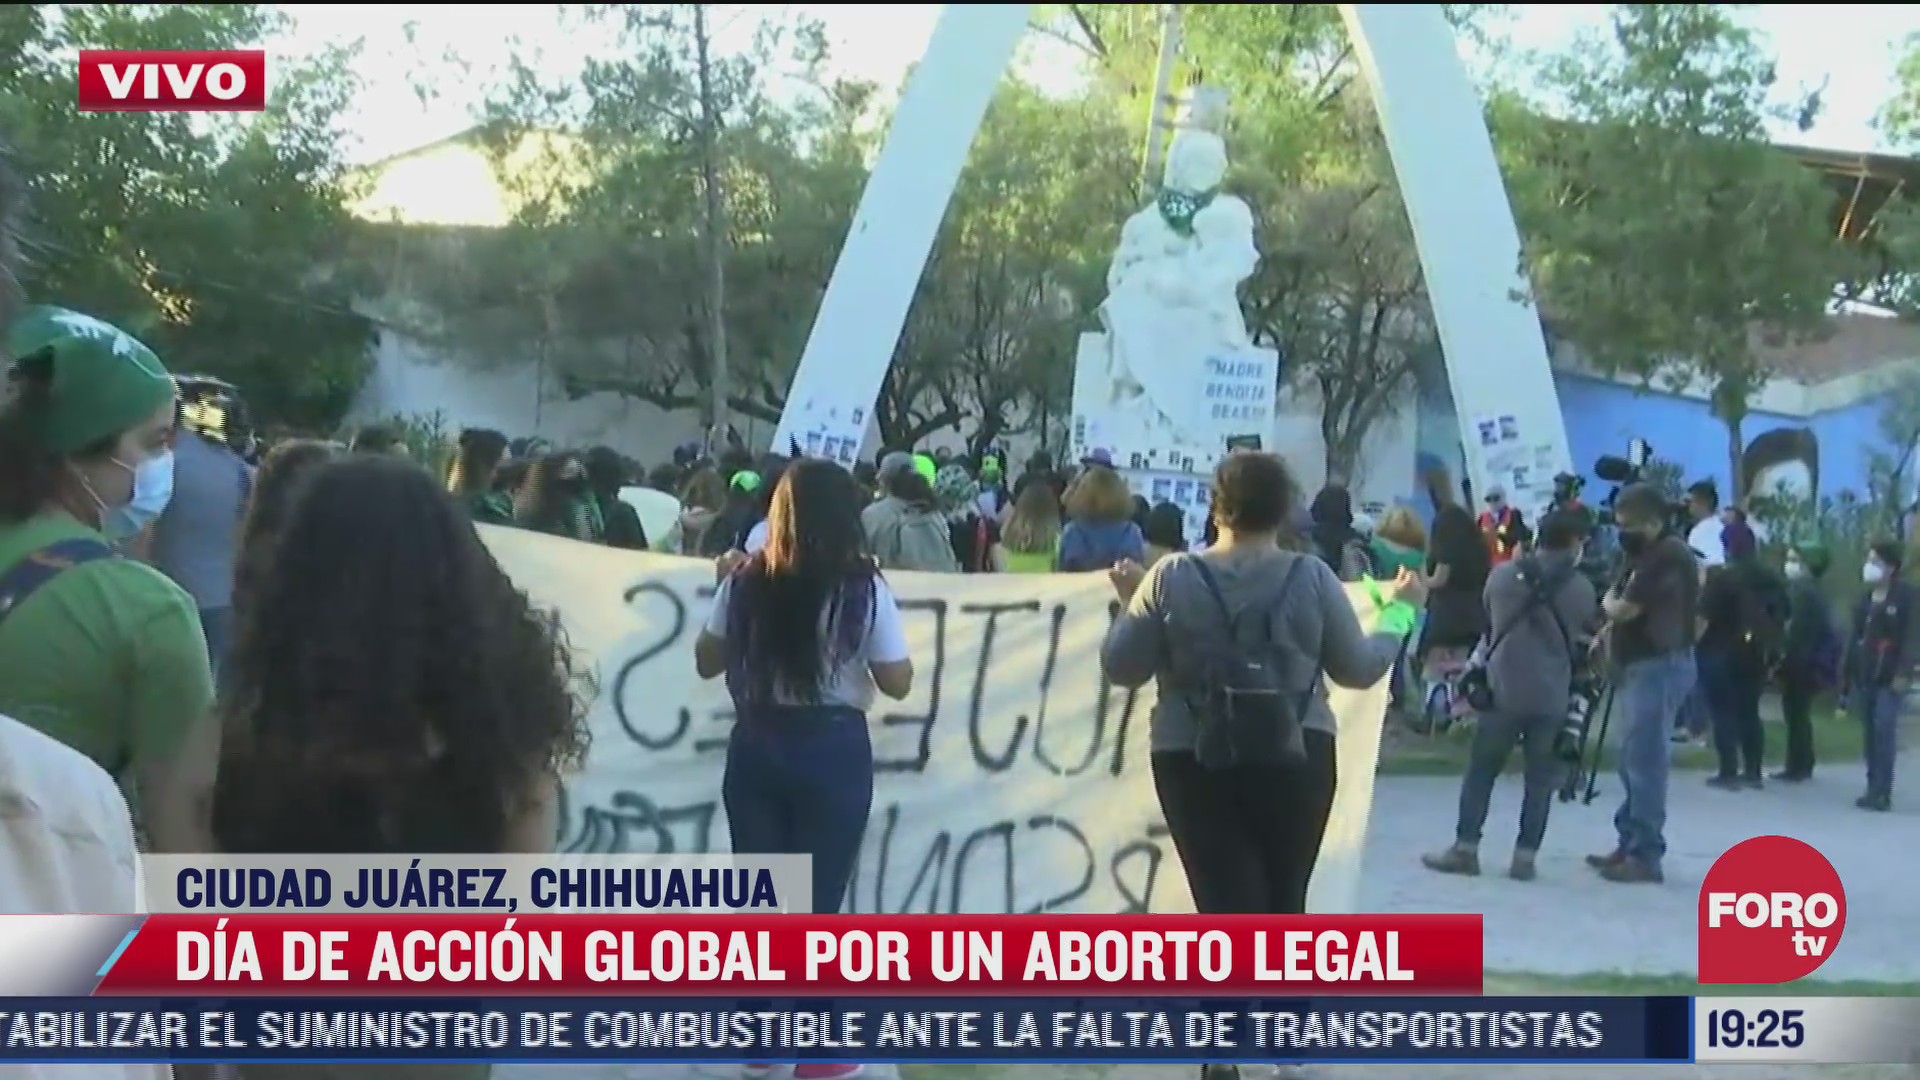 feministas de ciudad juarez realizan marcha pacifista en pro del aborto